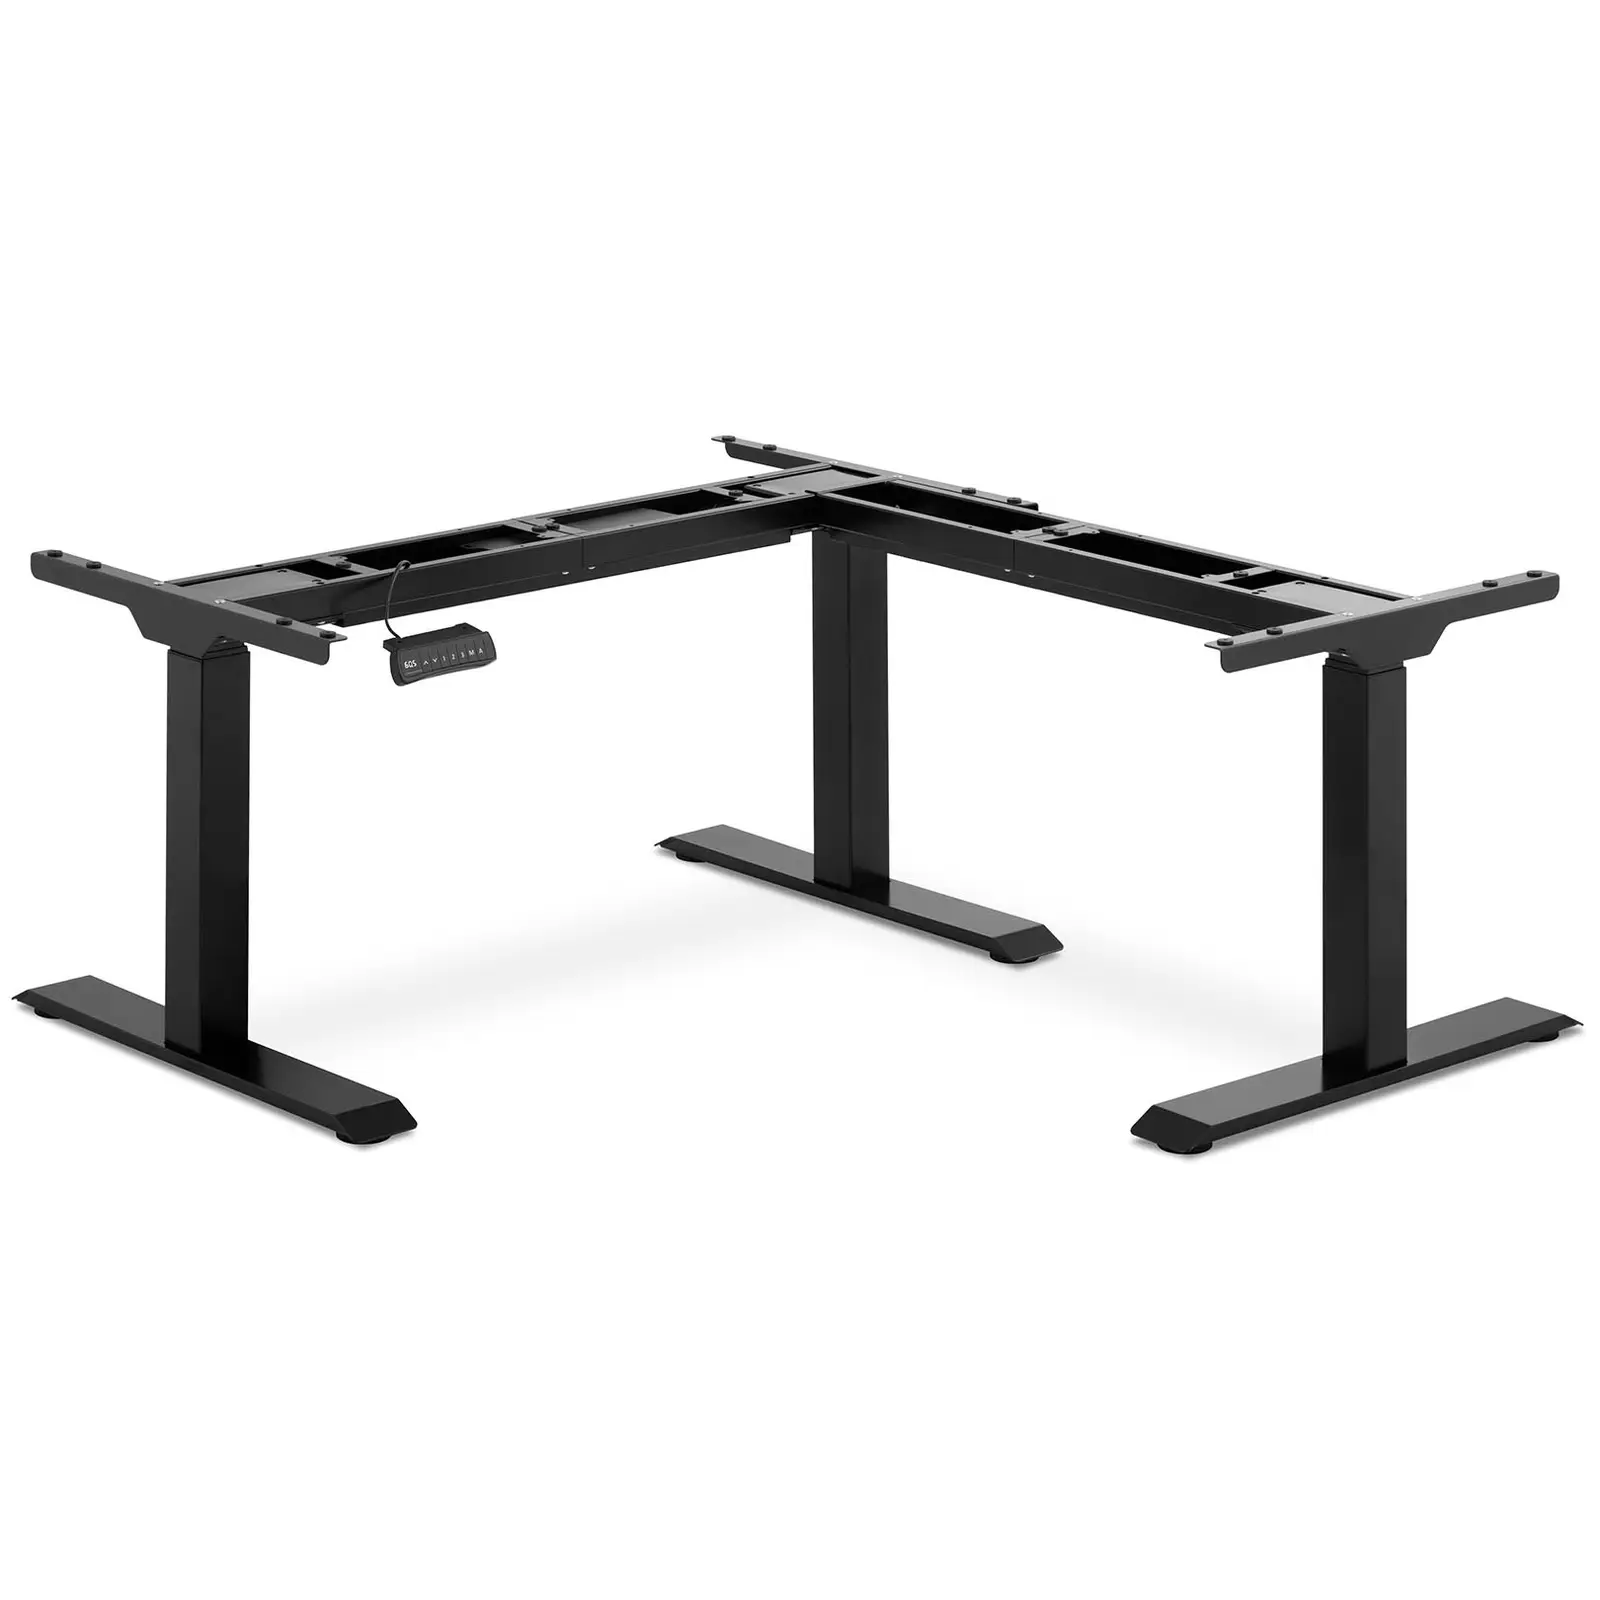 Adjustable Corner Desk Frame - Height: 58-123 cm - Width: 90-150 cm (left) / 110-190 cm (right) - Angle: 90 ° - 150 kg